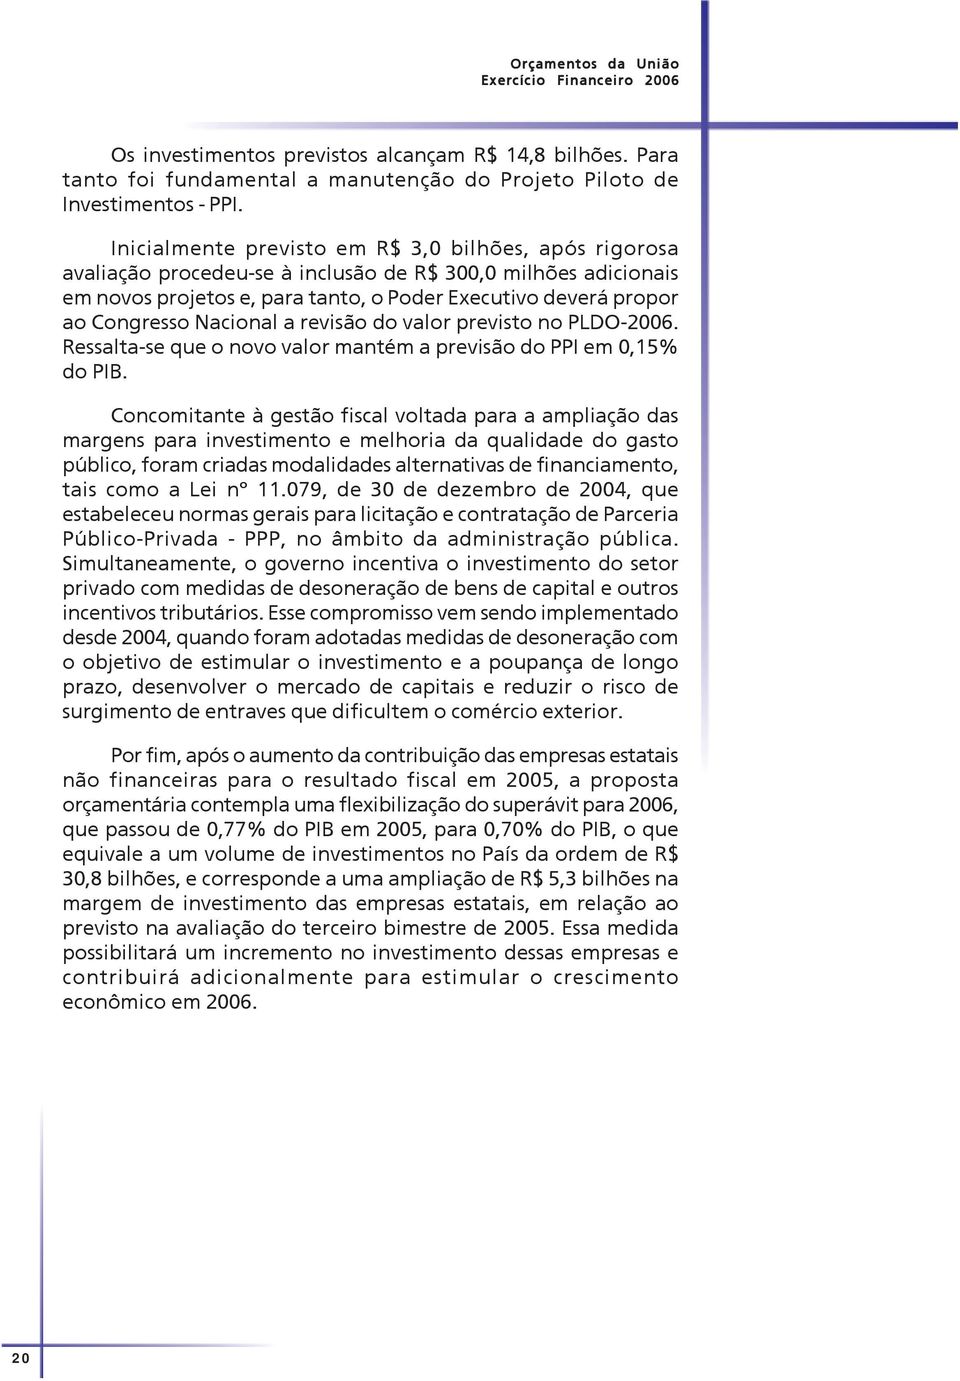 Nacional a revisão do valor previsto no PLDO-2006. Ressalta-se que o novo valor mantém a previsão do PPI em 0,15% do PIB.